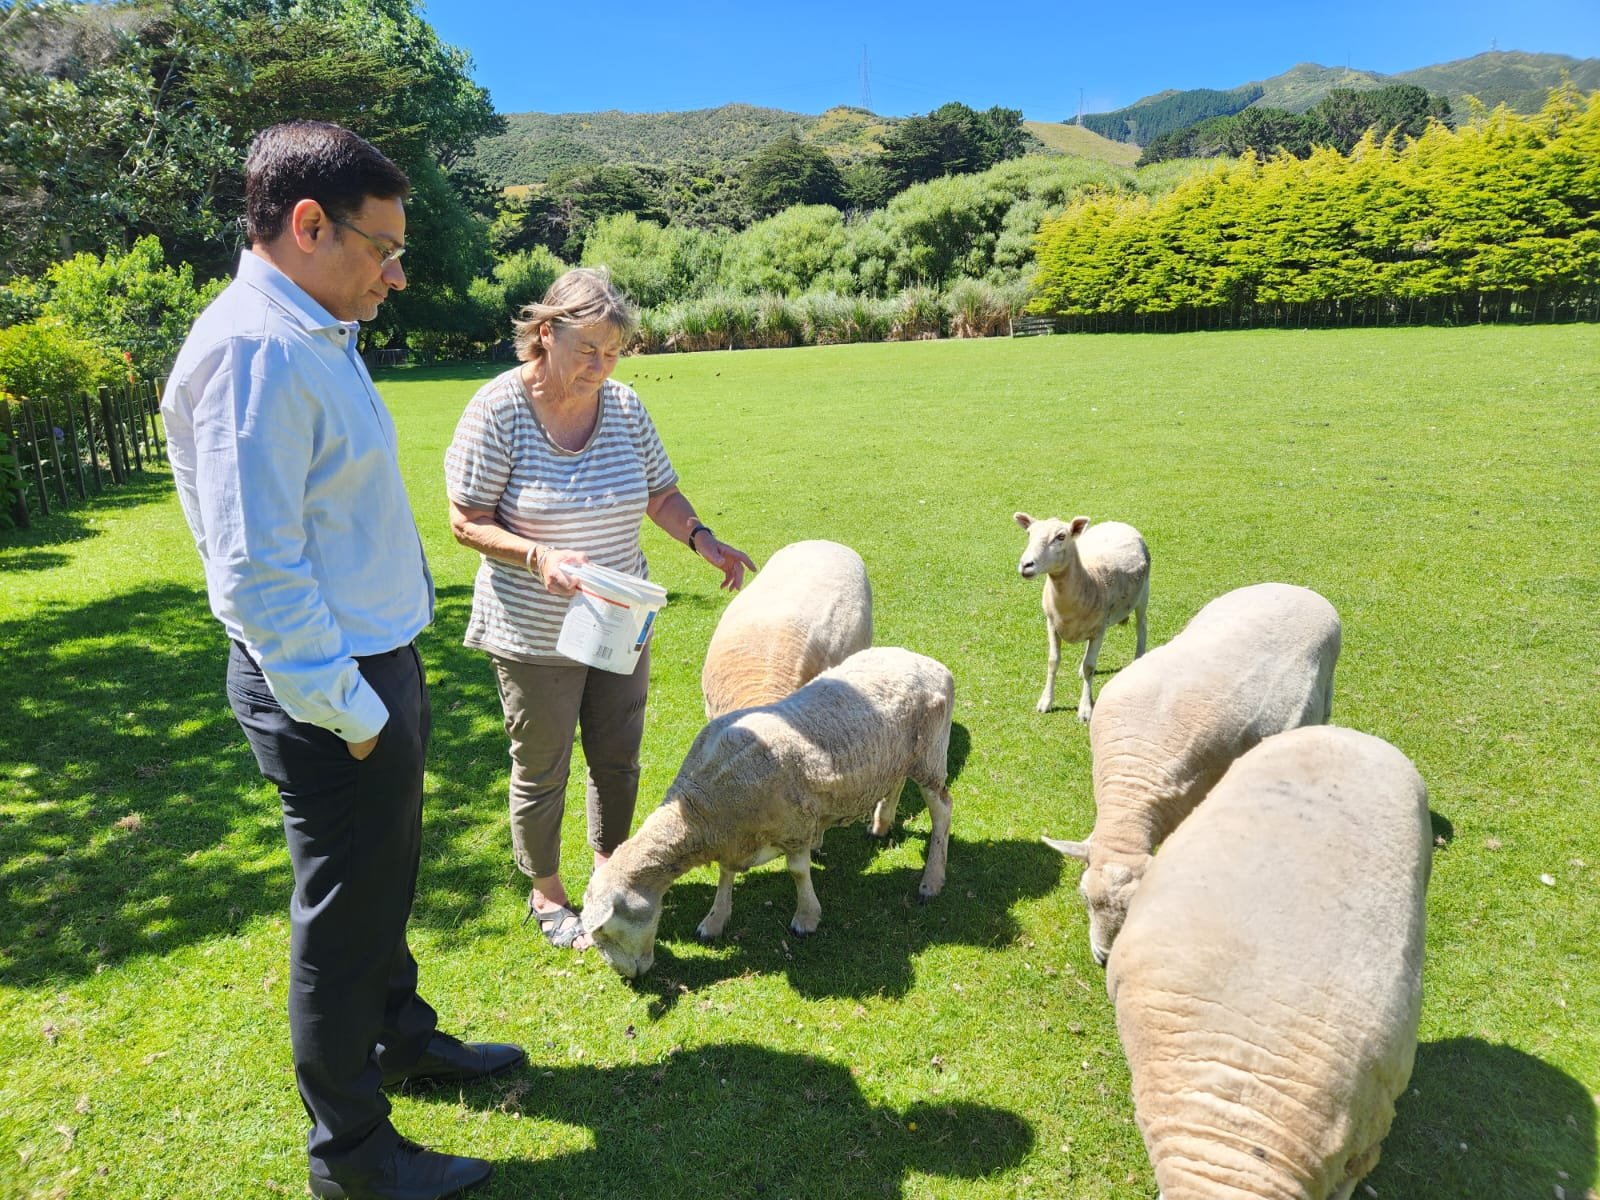 न्यूजीलैंड की तर्ज पर उत्तराखंड में बनेंगे भेड़-बकरी पालन फार्म! विदेश दौरे पर गए कैबिनेट मंत्री सौरभ बहुगुणा ने वेलिंगटन में देखा- कैसे शहरी और ग्रामीण पर्वतीय क्षेत्रों में भेड़-बकरी पालन से हो रही मोटी आमदनी